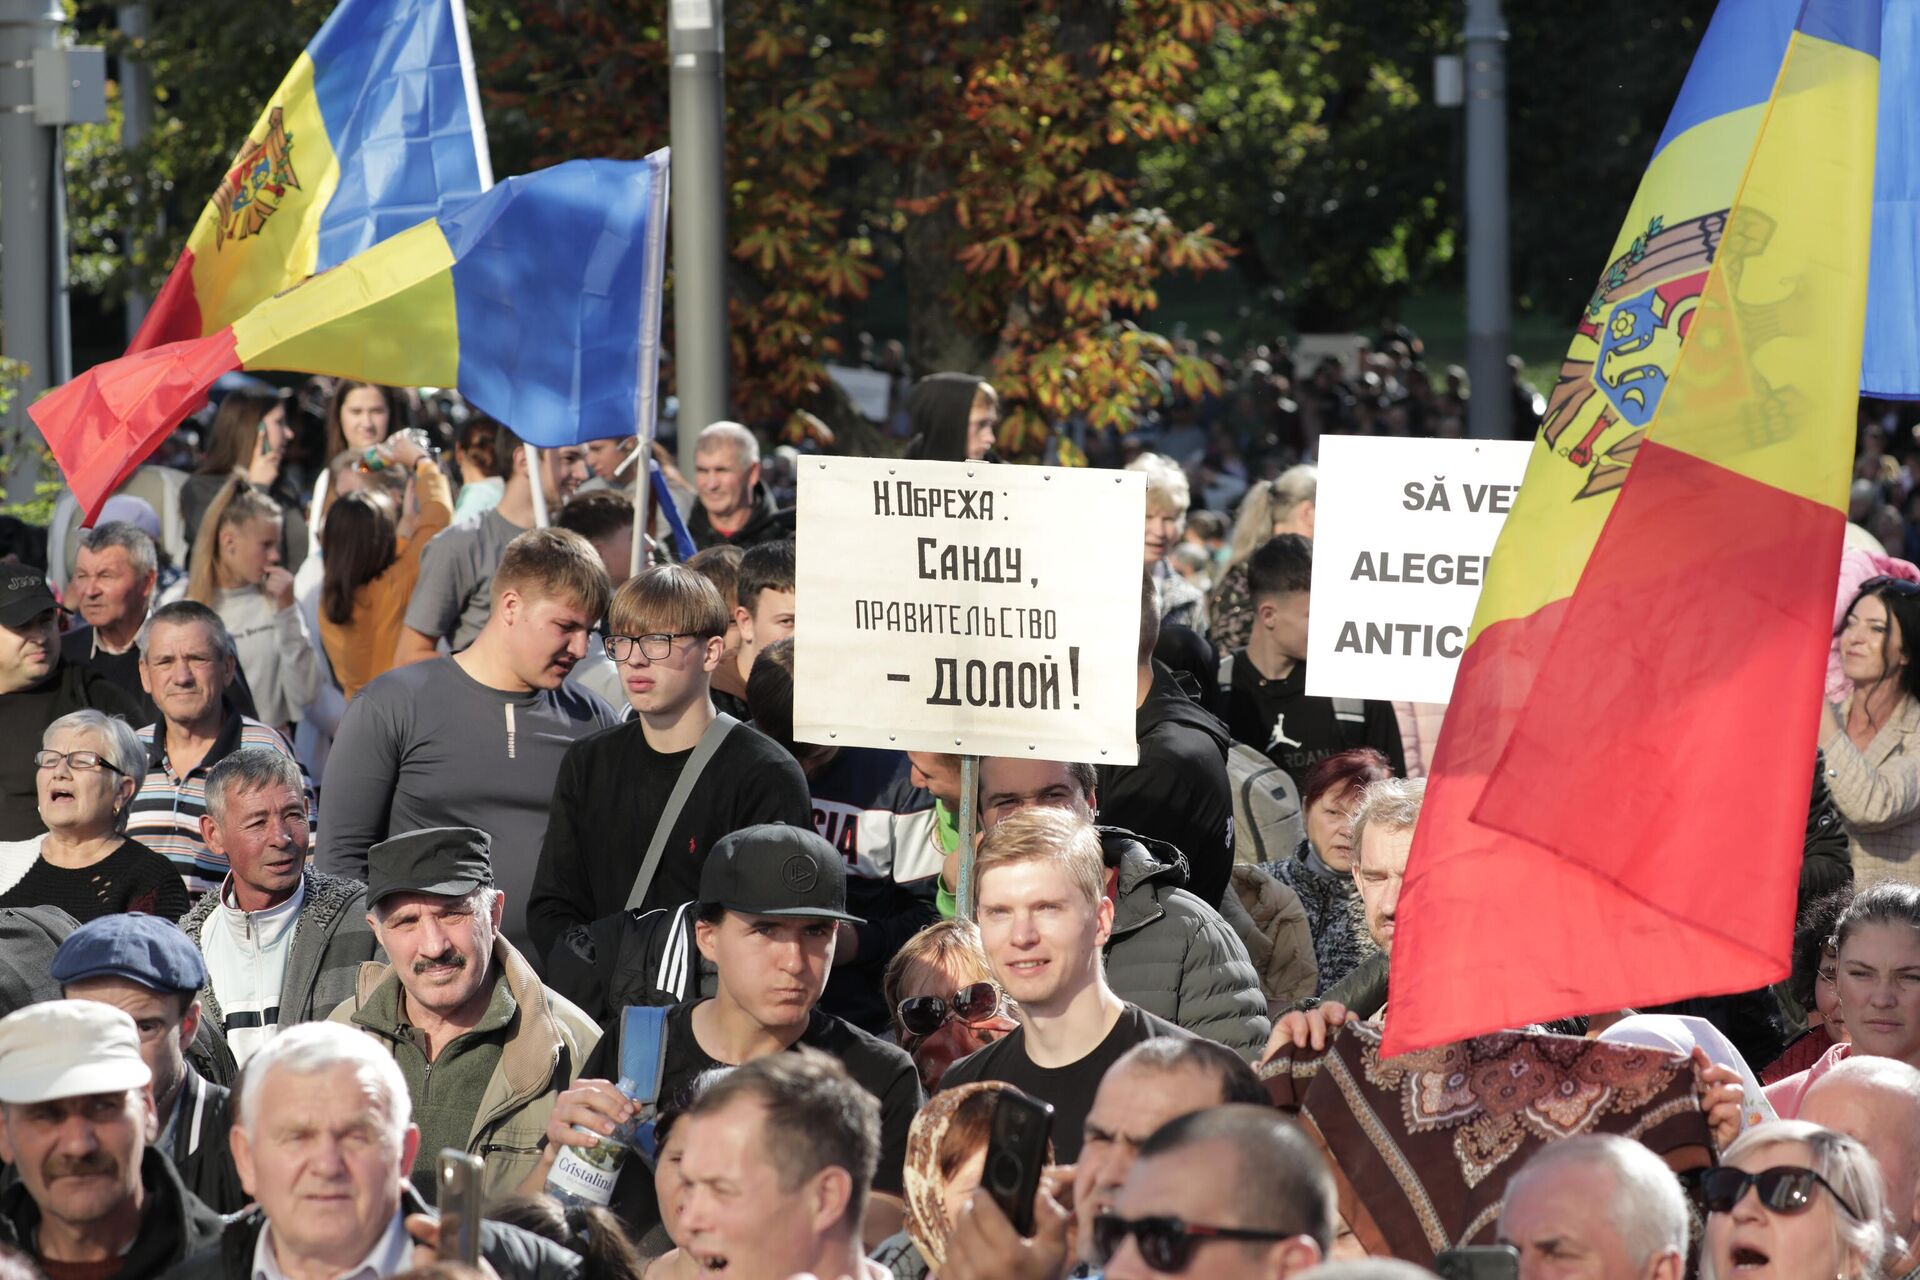 Протест в палаточном городке в Кишиневе 25.09.2022 - Sputnik Молдова, 1920, 25.09.2022